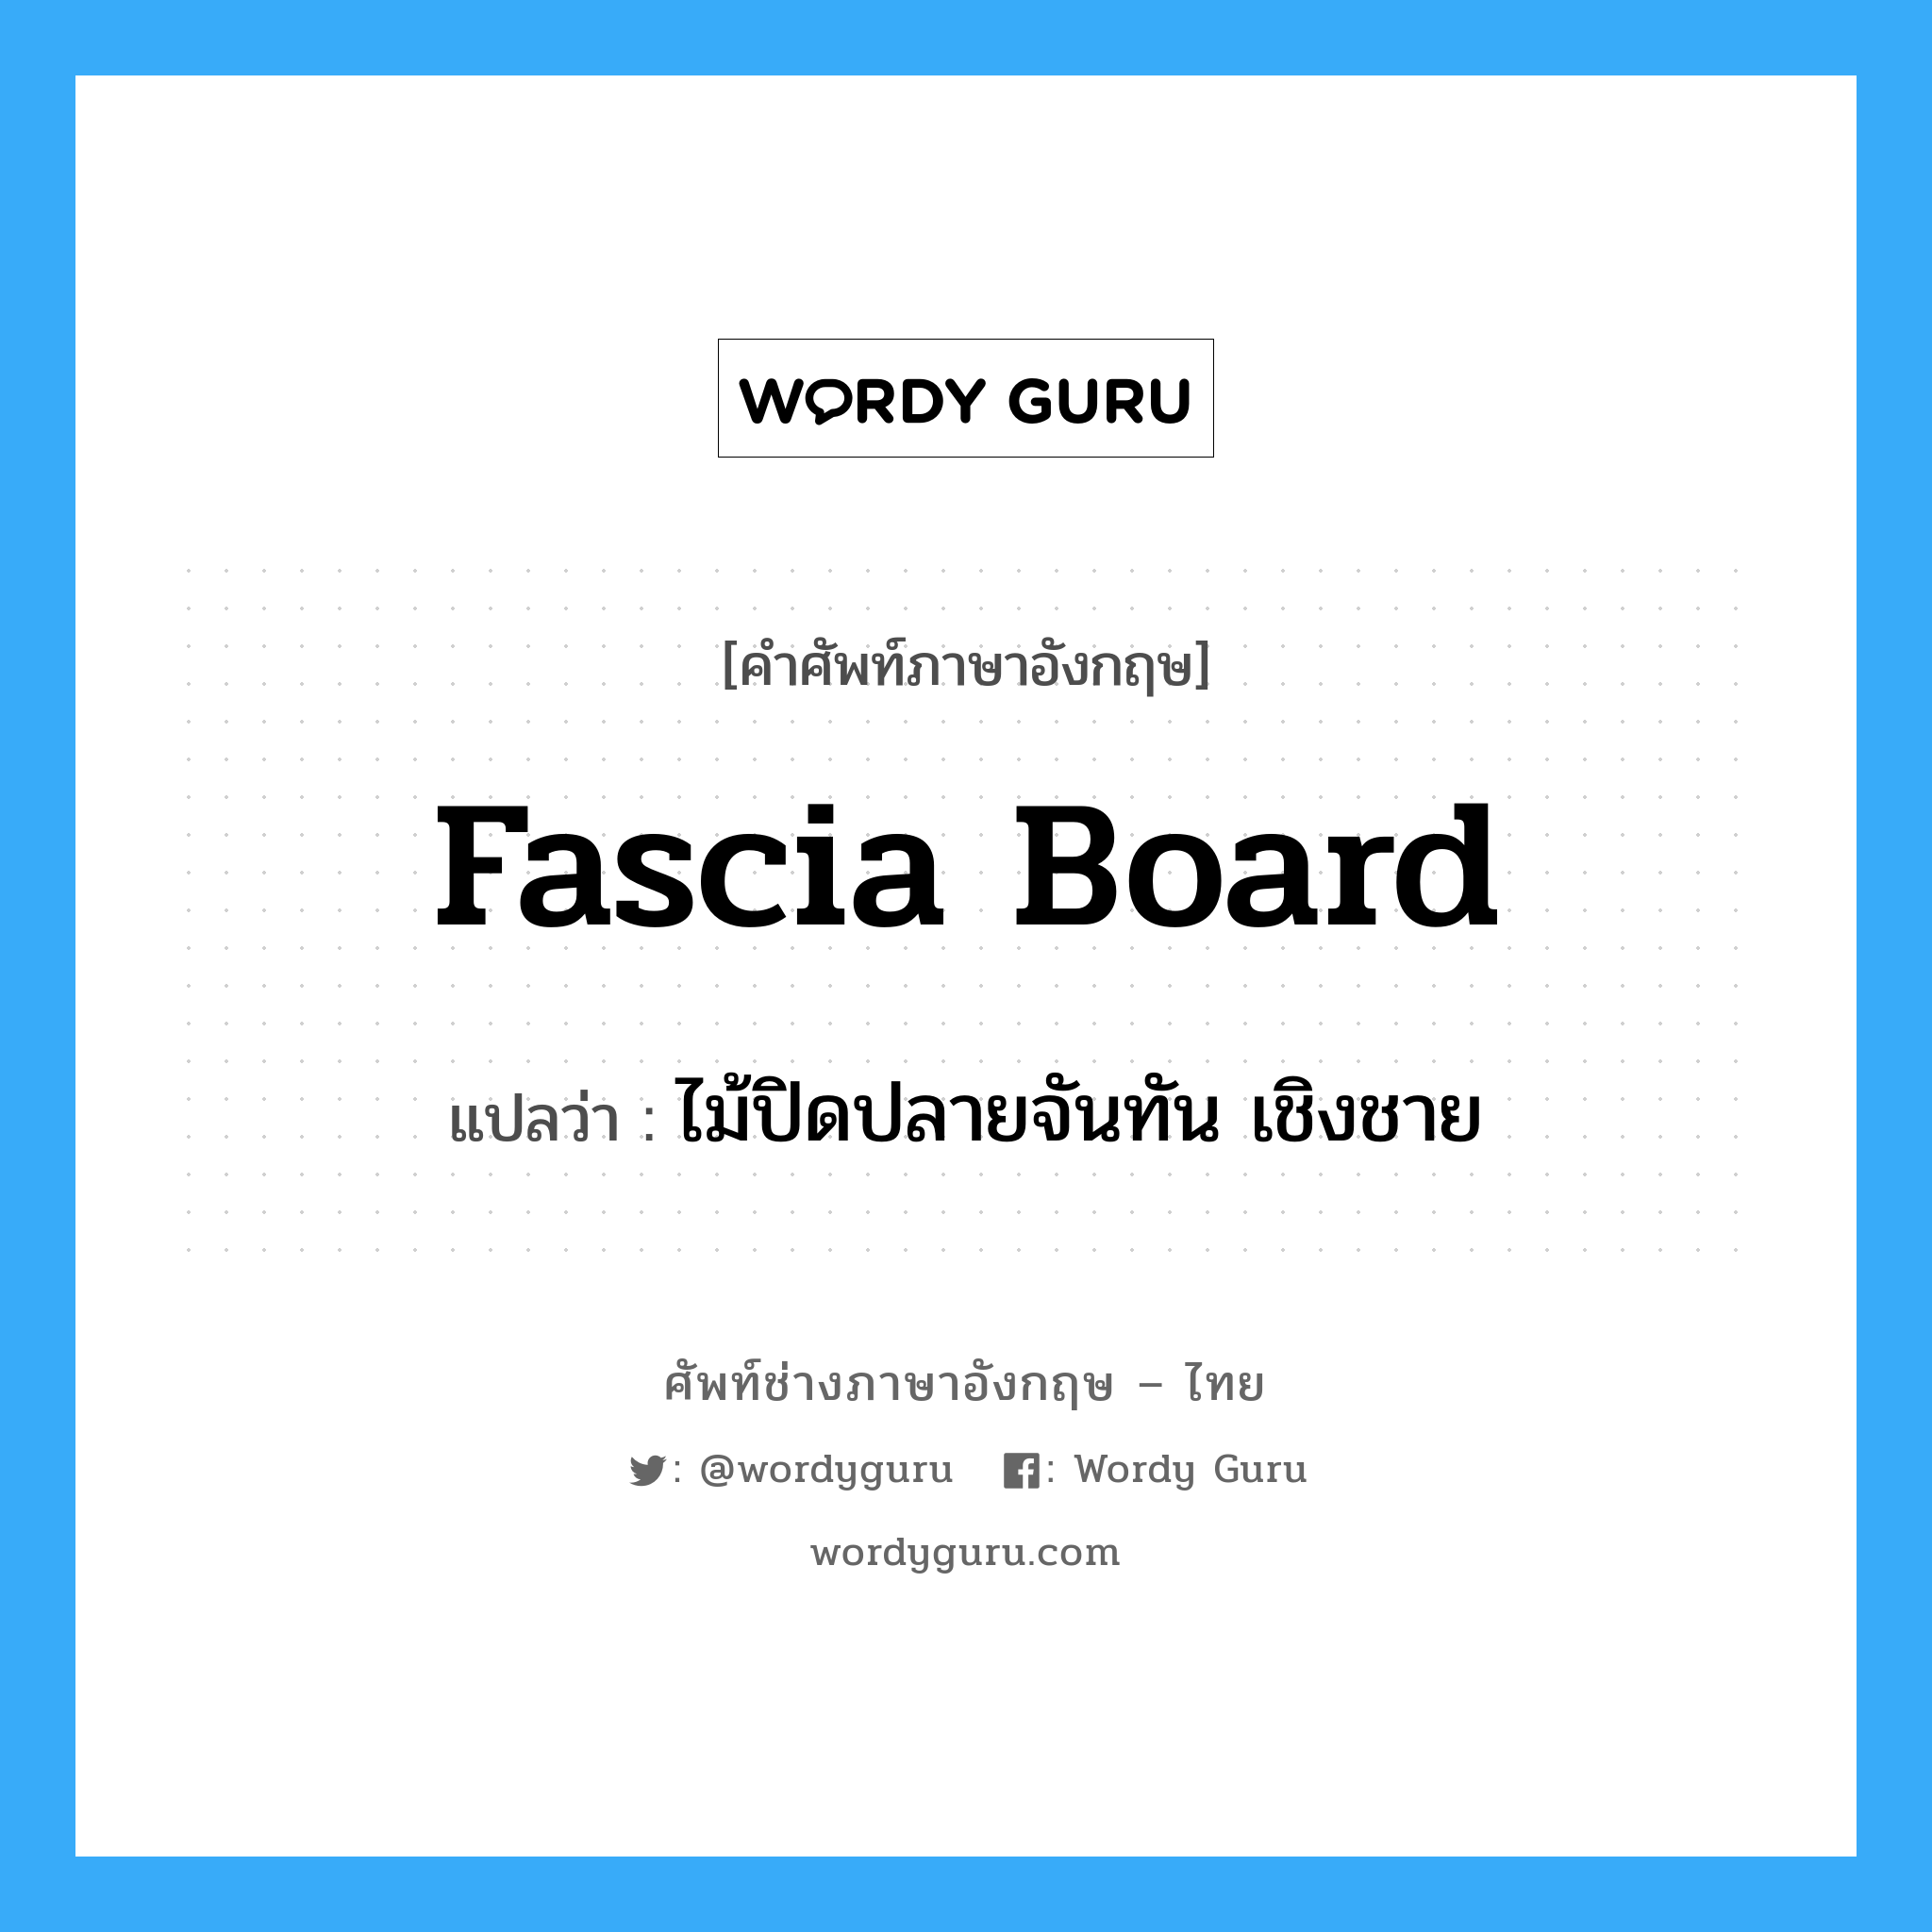 fascia board แปลว่า?, คำศัพท์ช่างภาษาอังกฤษ - ไทย fascia board คำศัพท์ภาษาอังกฤษ fascia board แปลว่า ไม้ปิดปลายจันทัน เชิงชาย